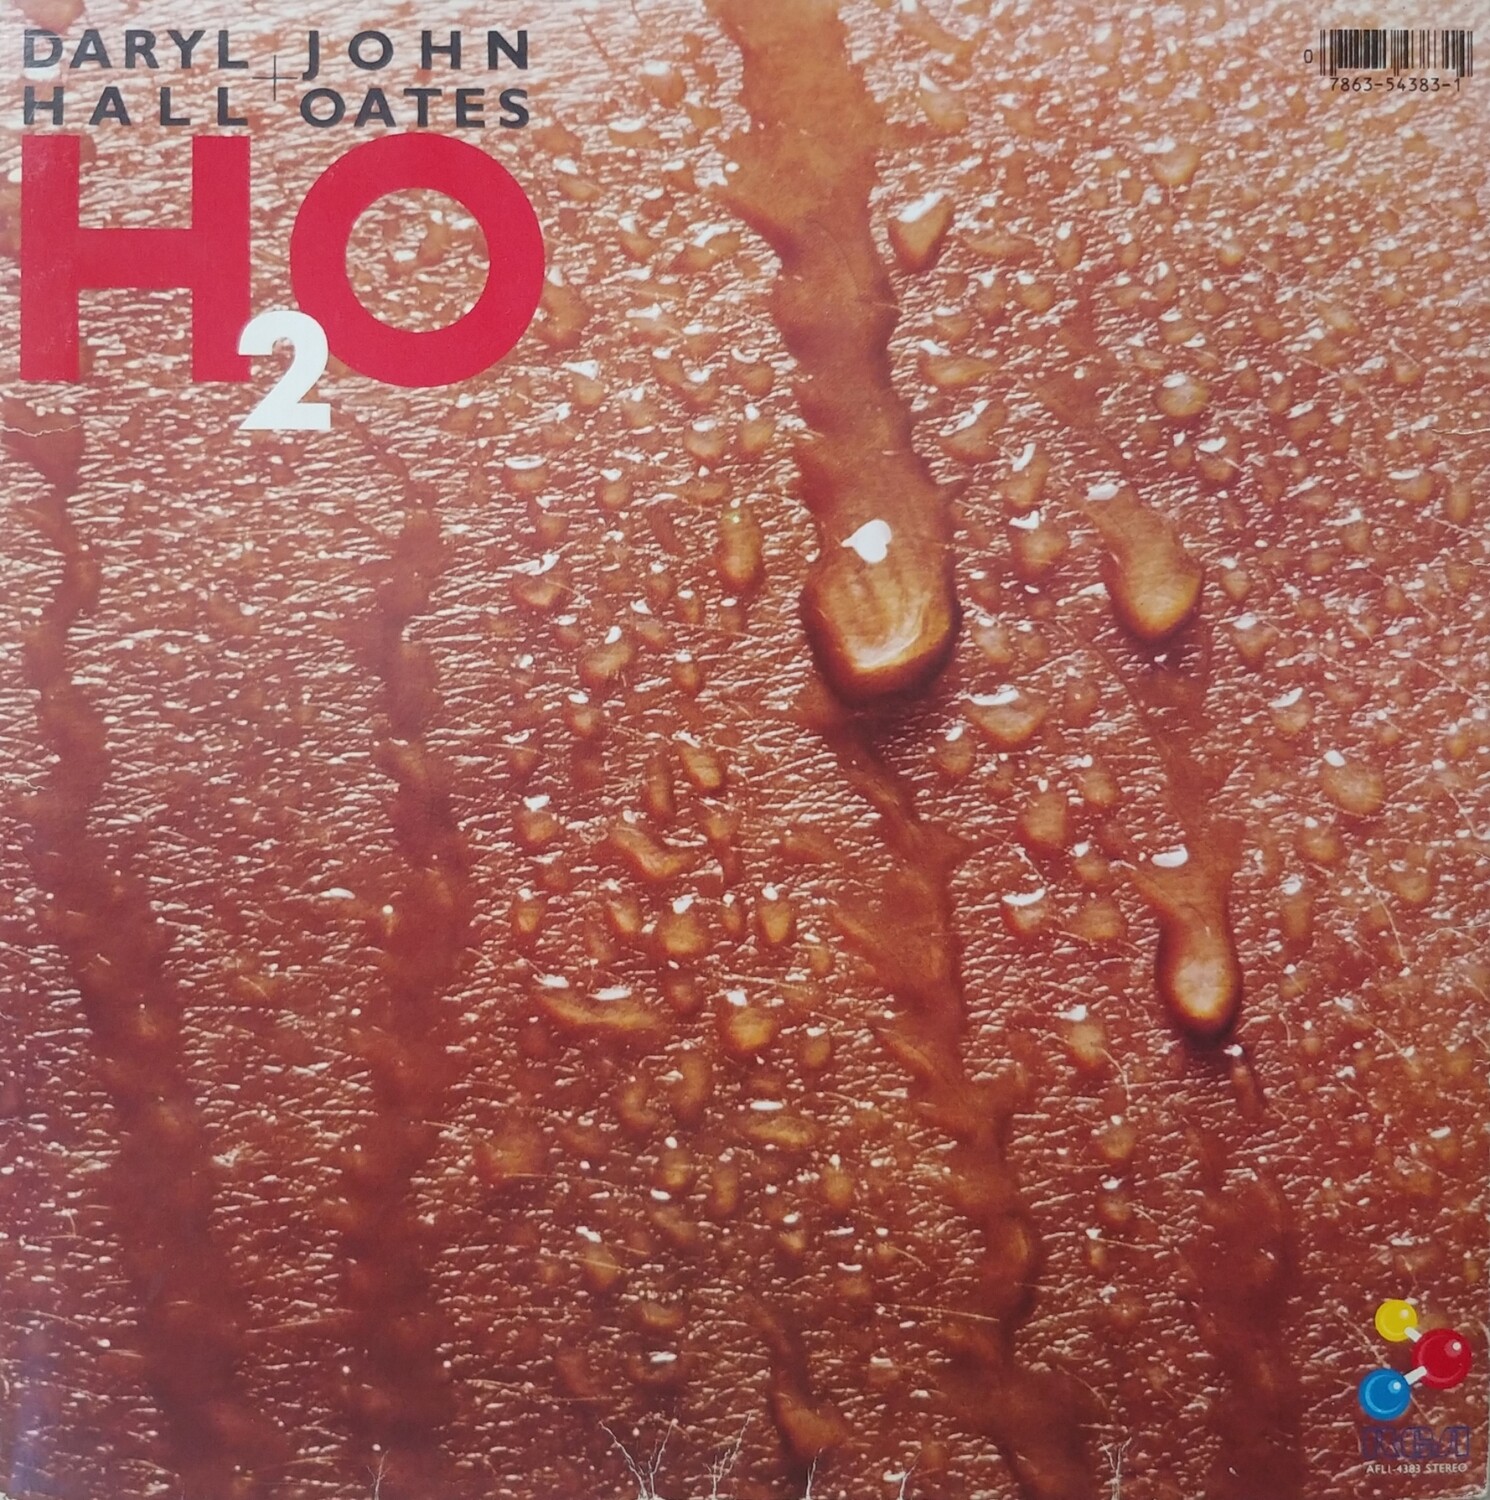 Hall & Oates - H2O